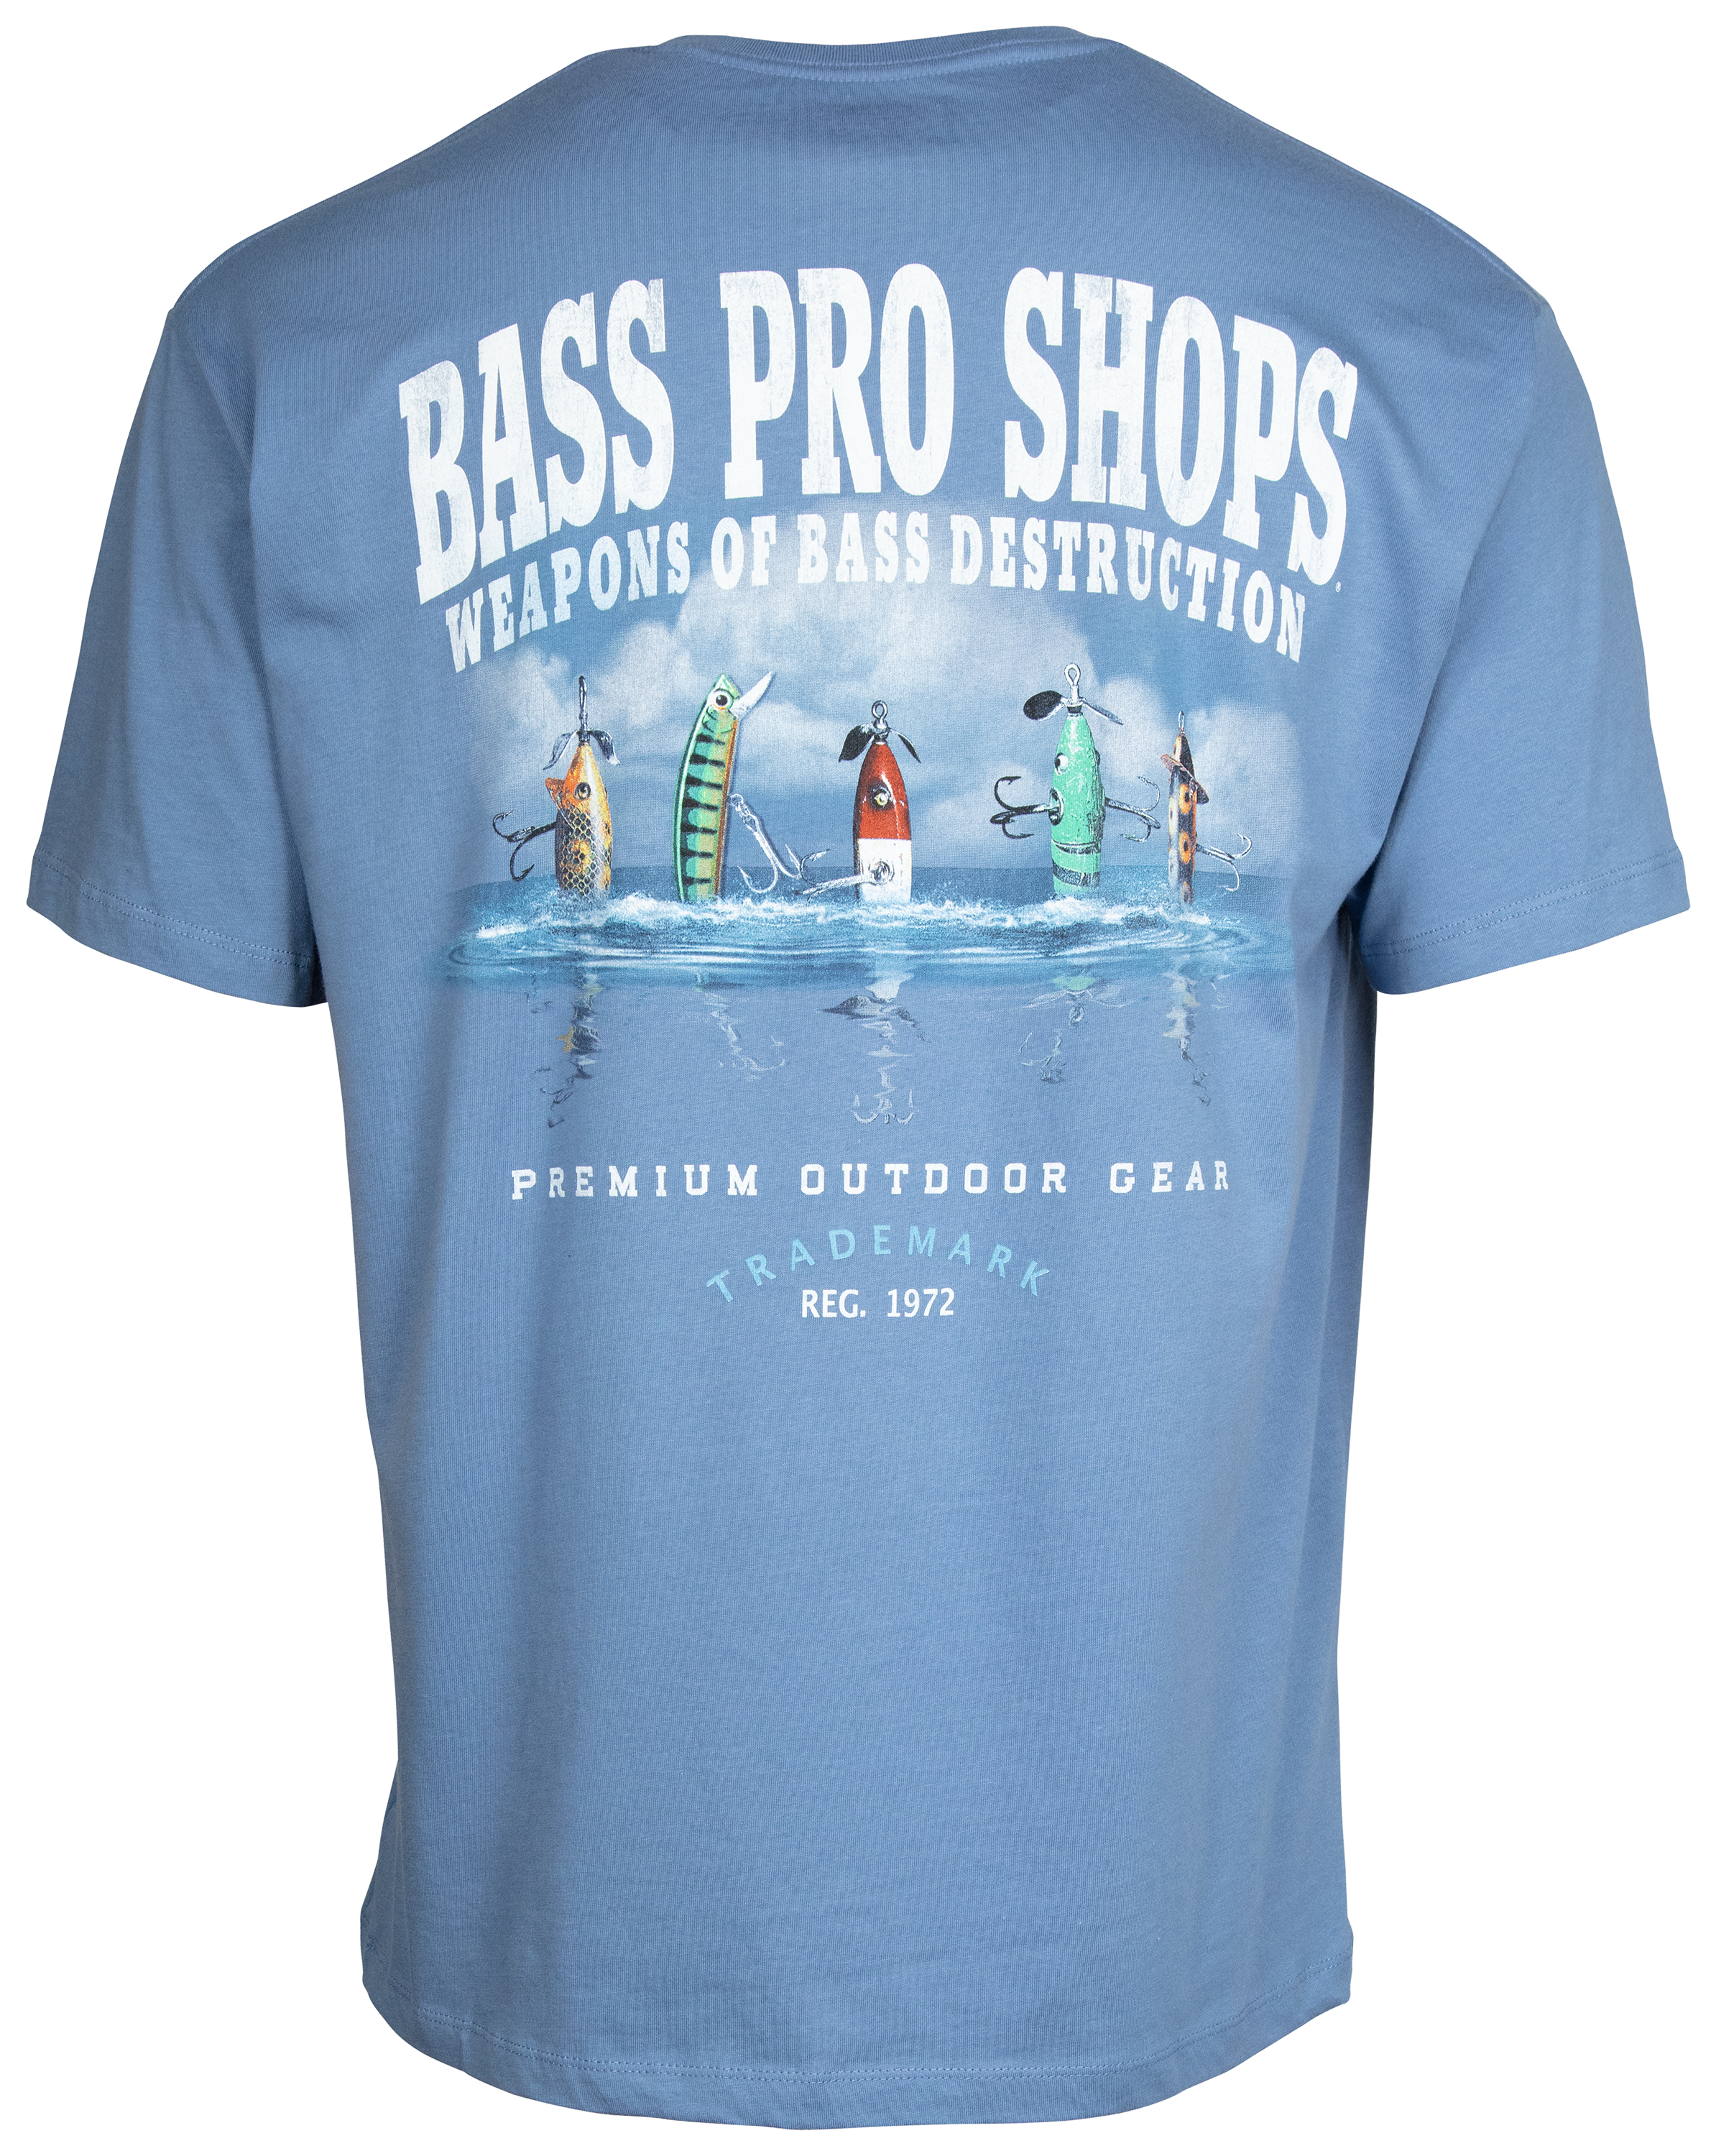 Bass Pro Shops Weapons of Bass Destruction Short-Sleeve T-Shirt for Men